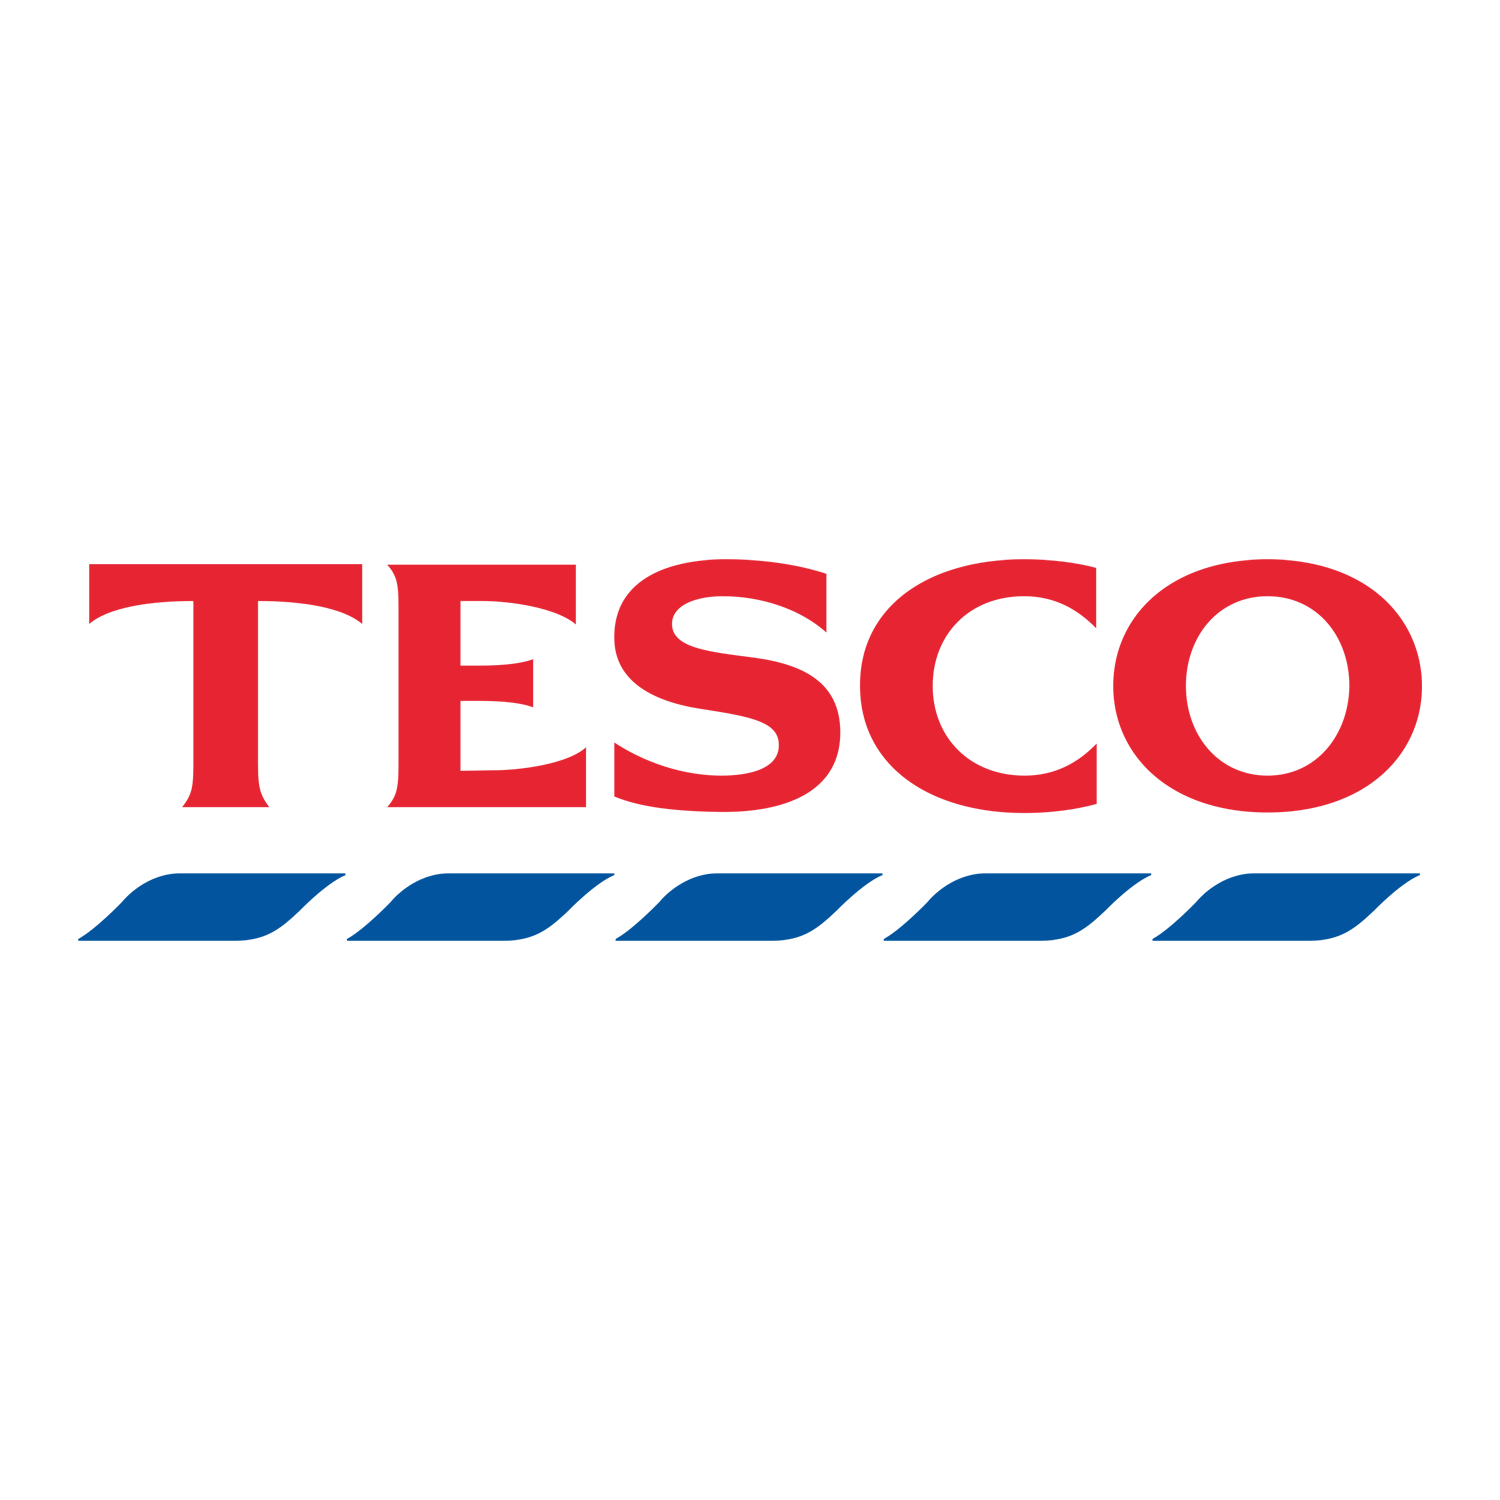 Tesco Logo